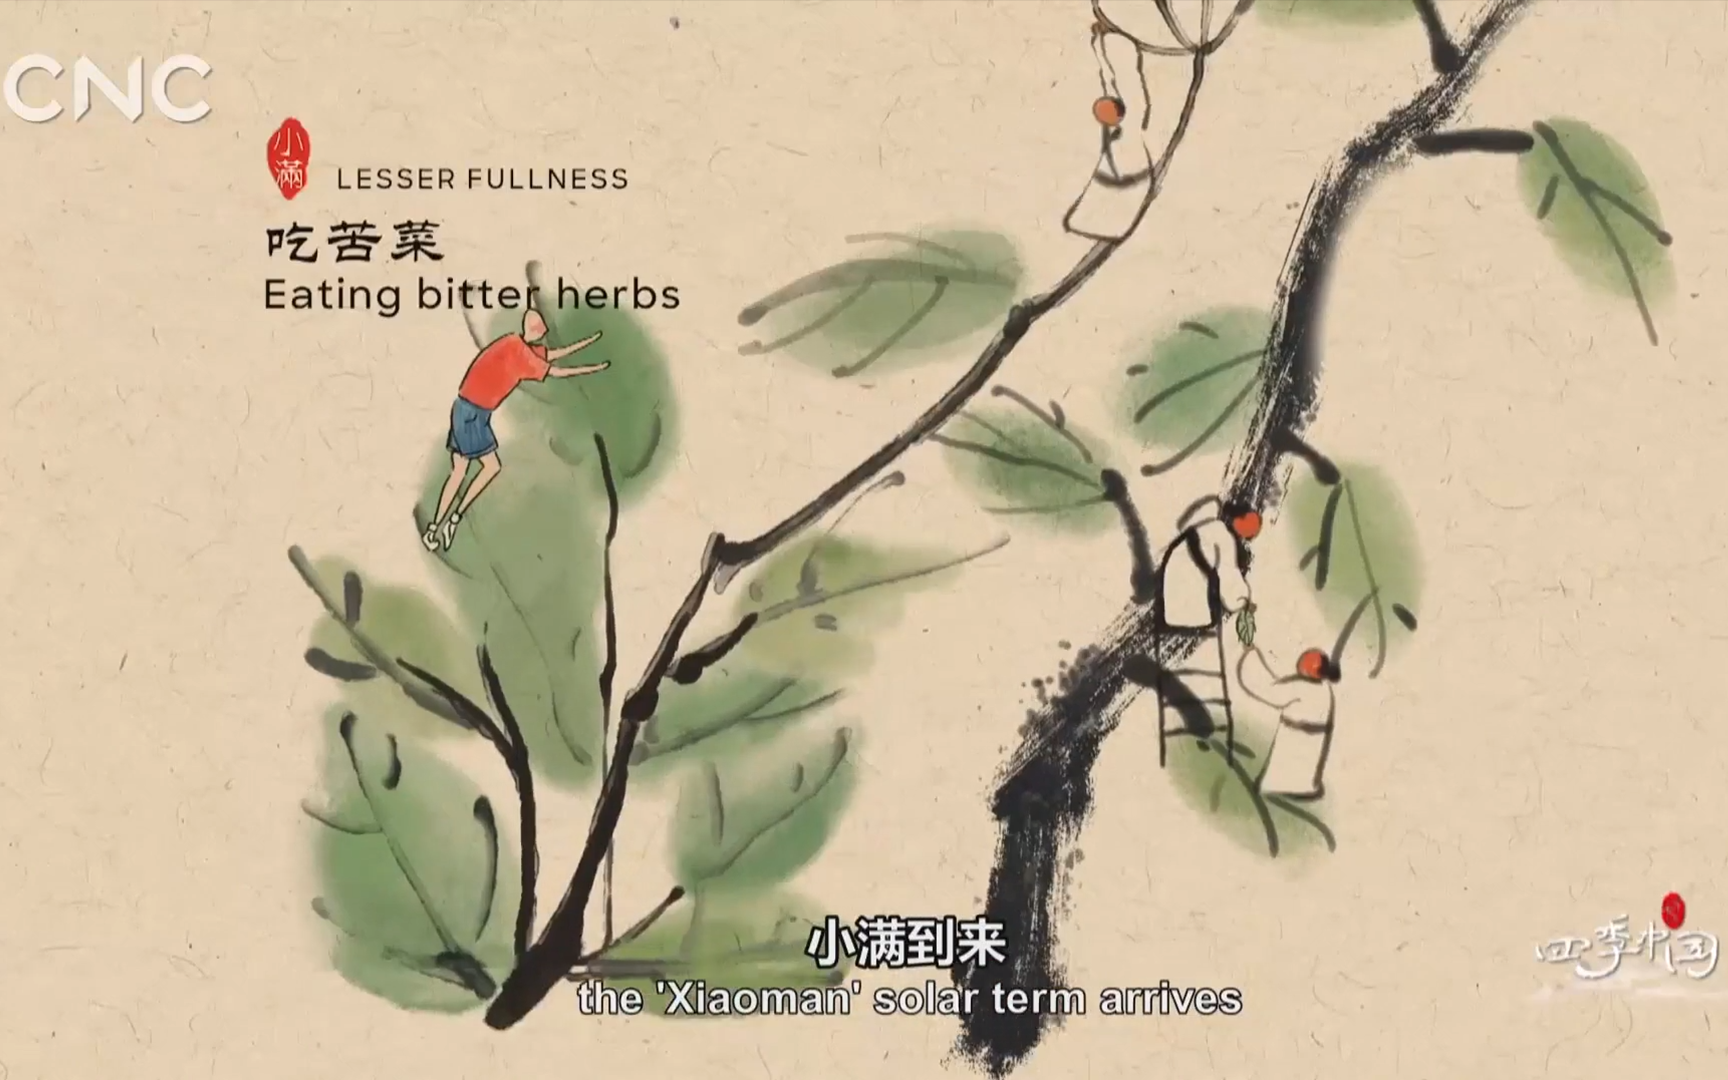 【纪录片】《四季中国》第八集《小满》